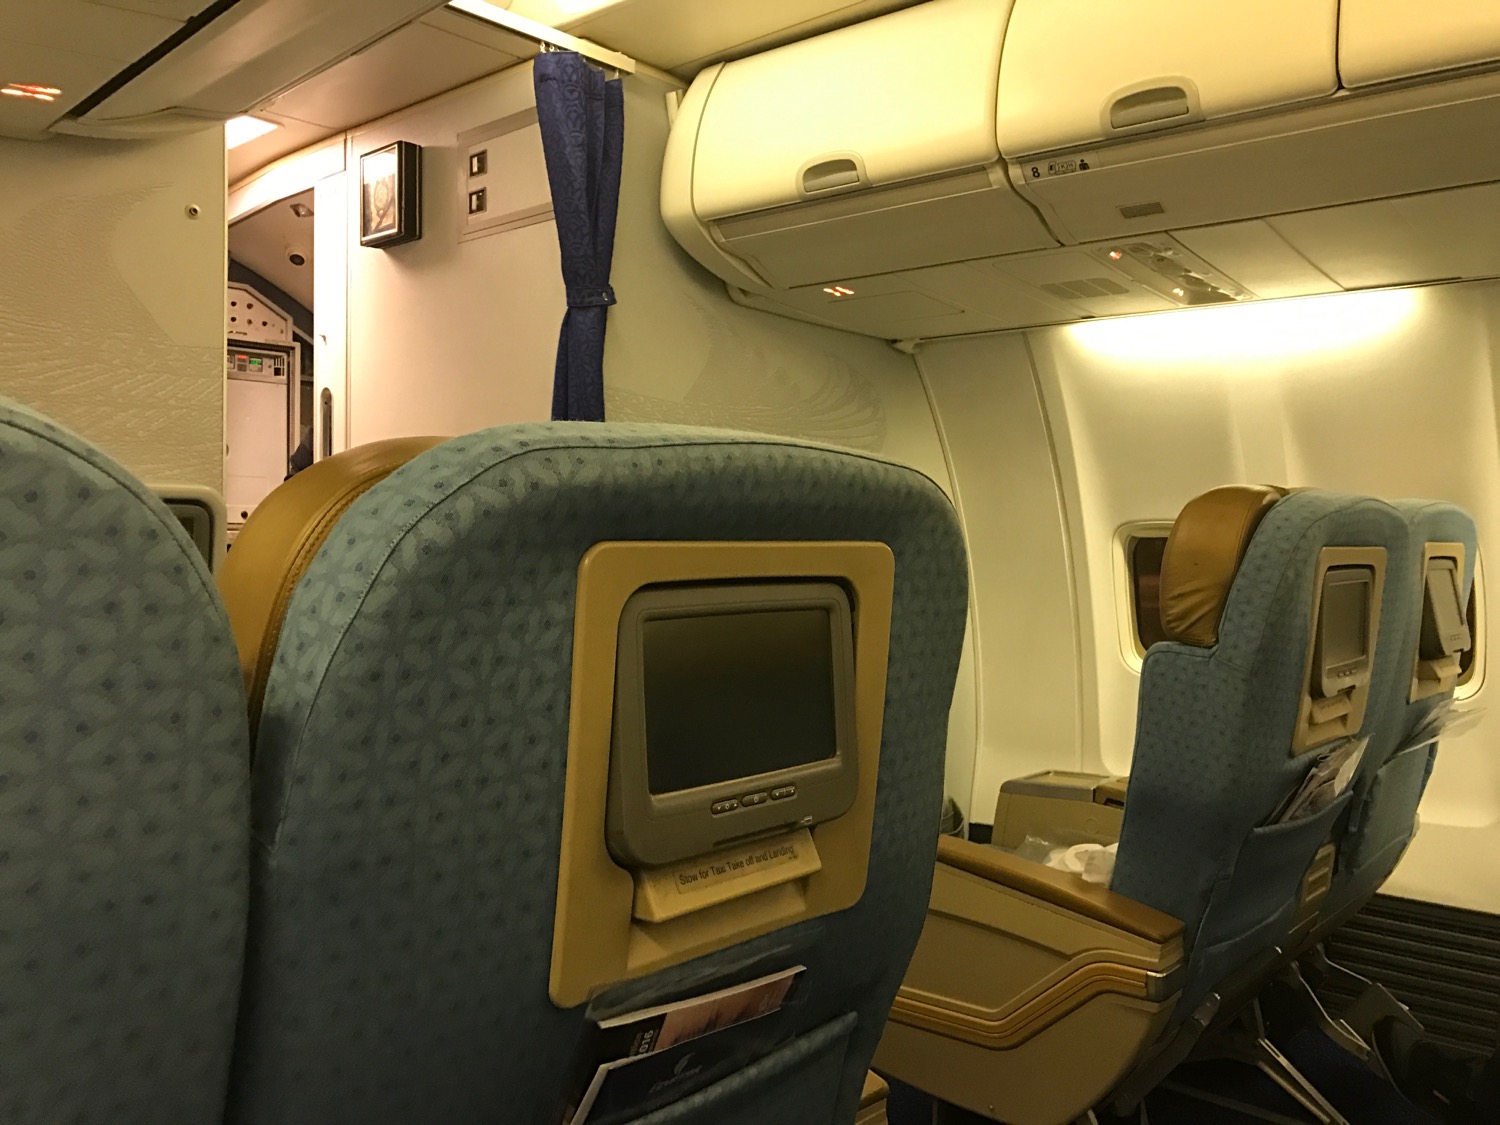 EgpytAir Cairo to Beirut 737-800 Business Class - 7